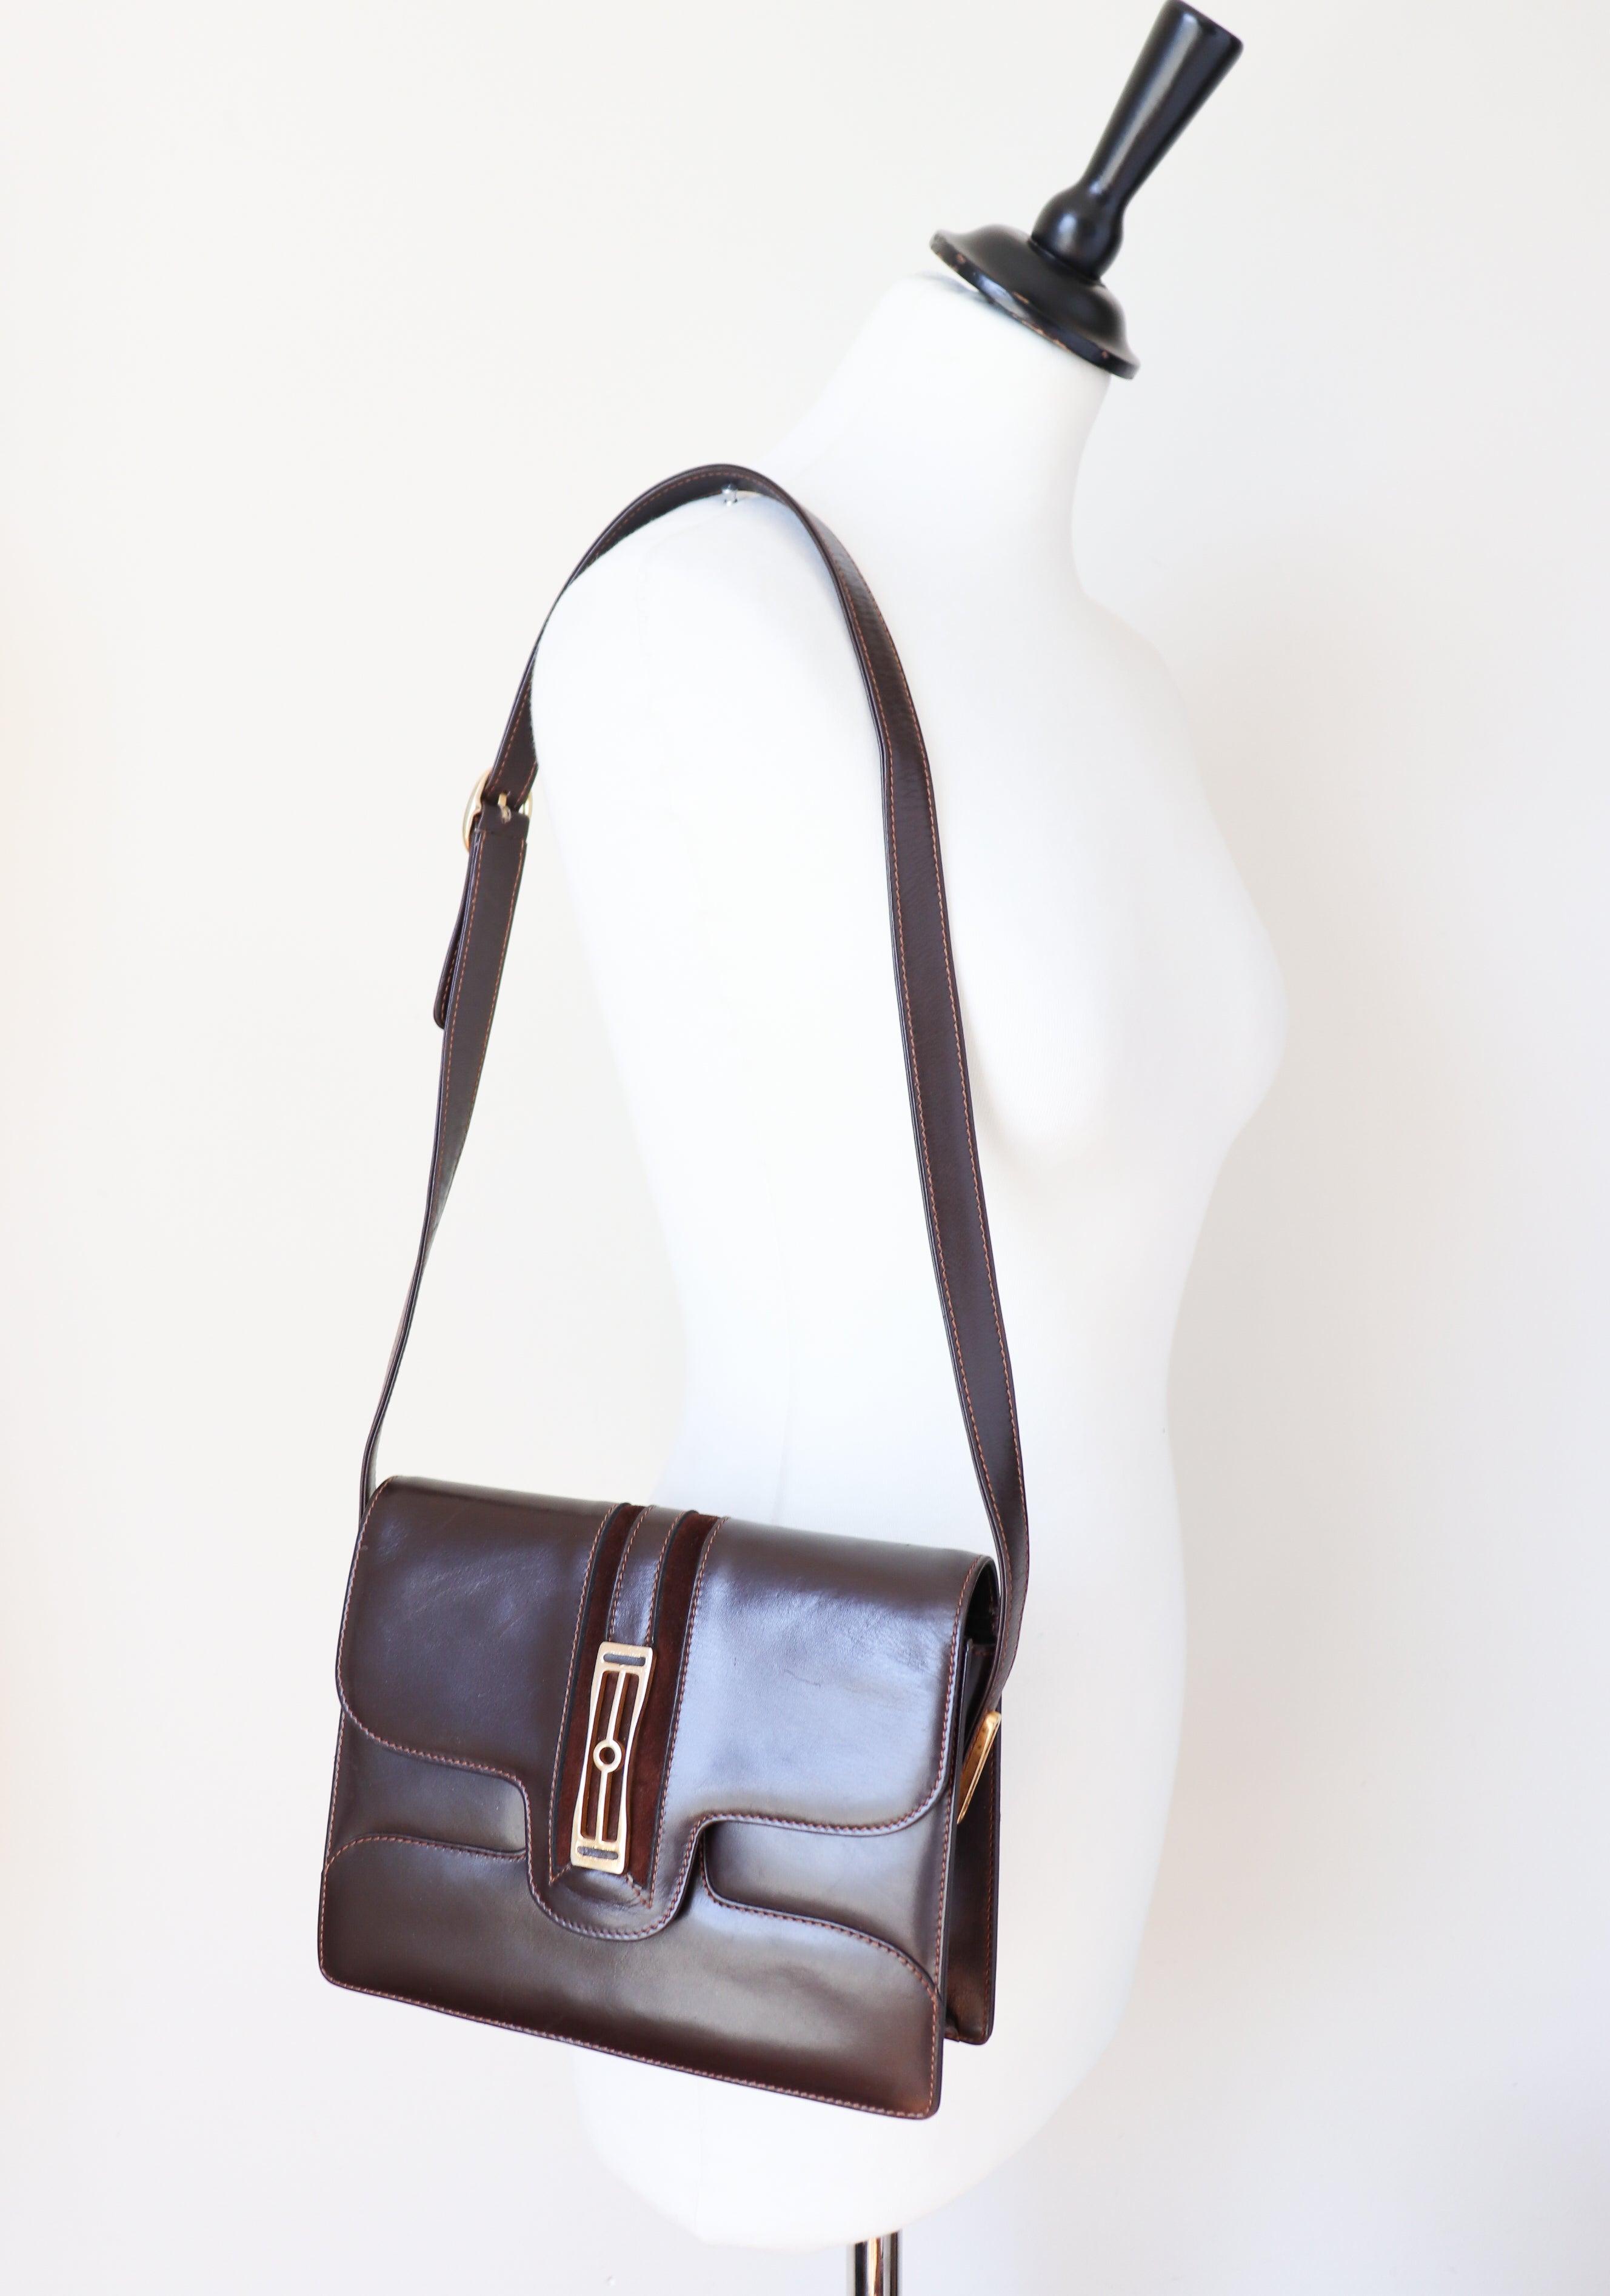 1980s Vintage Shoulder Bag - Brown Leather - Small